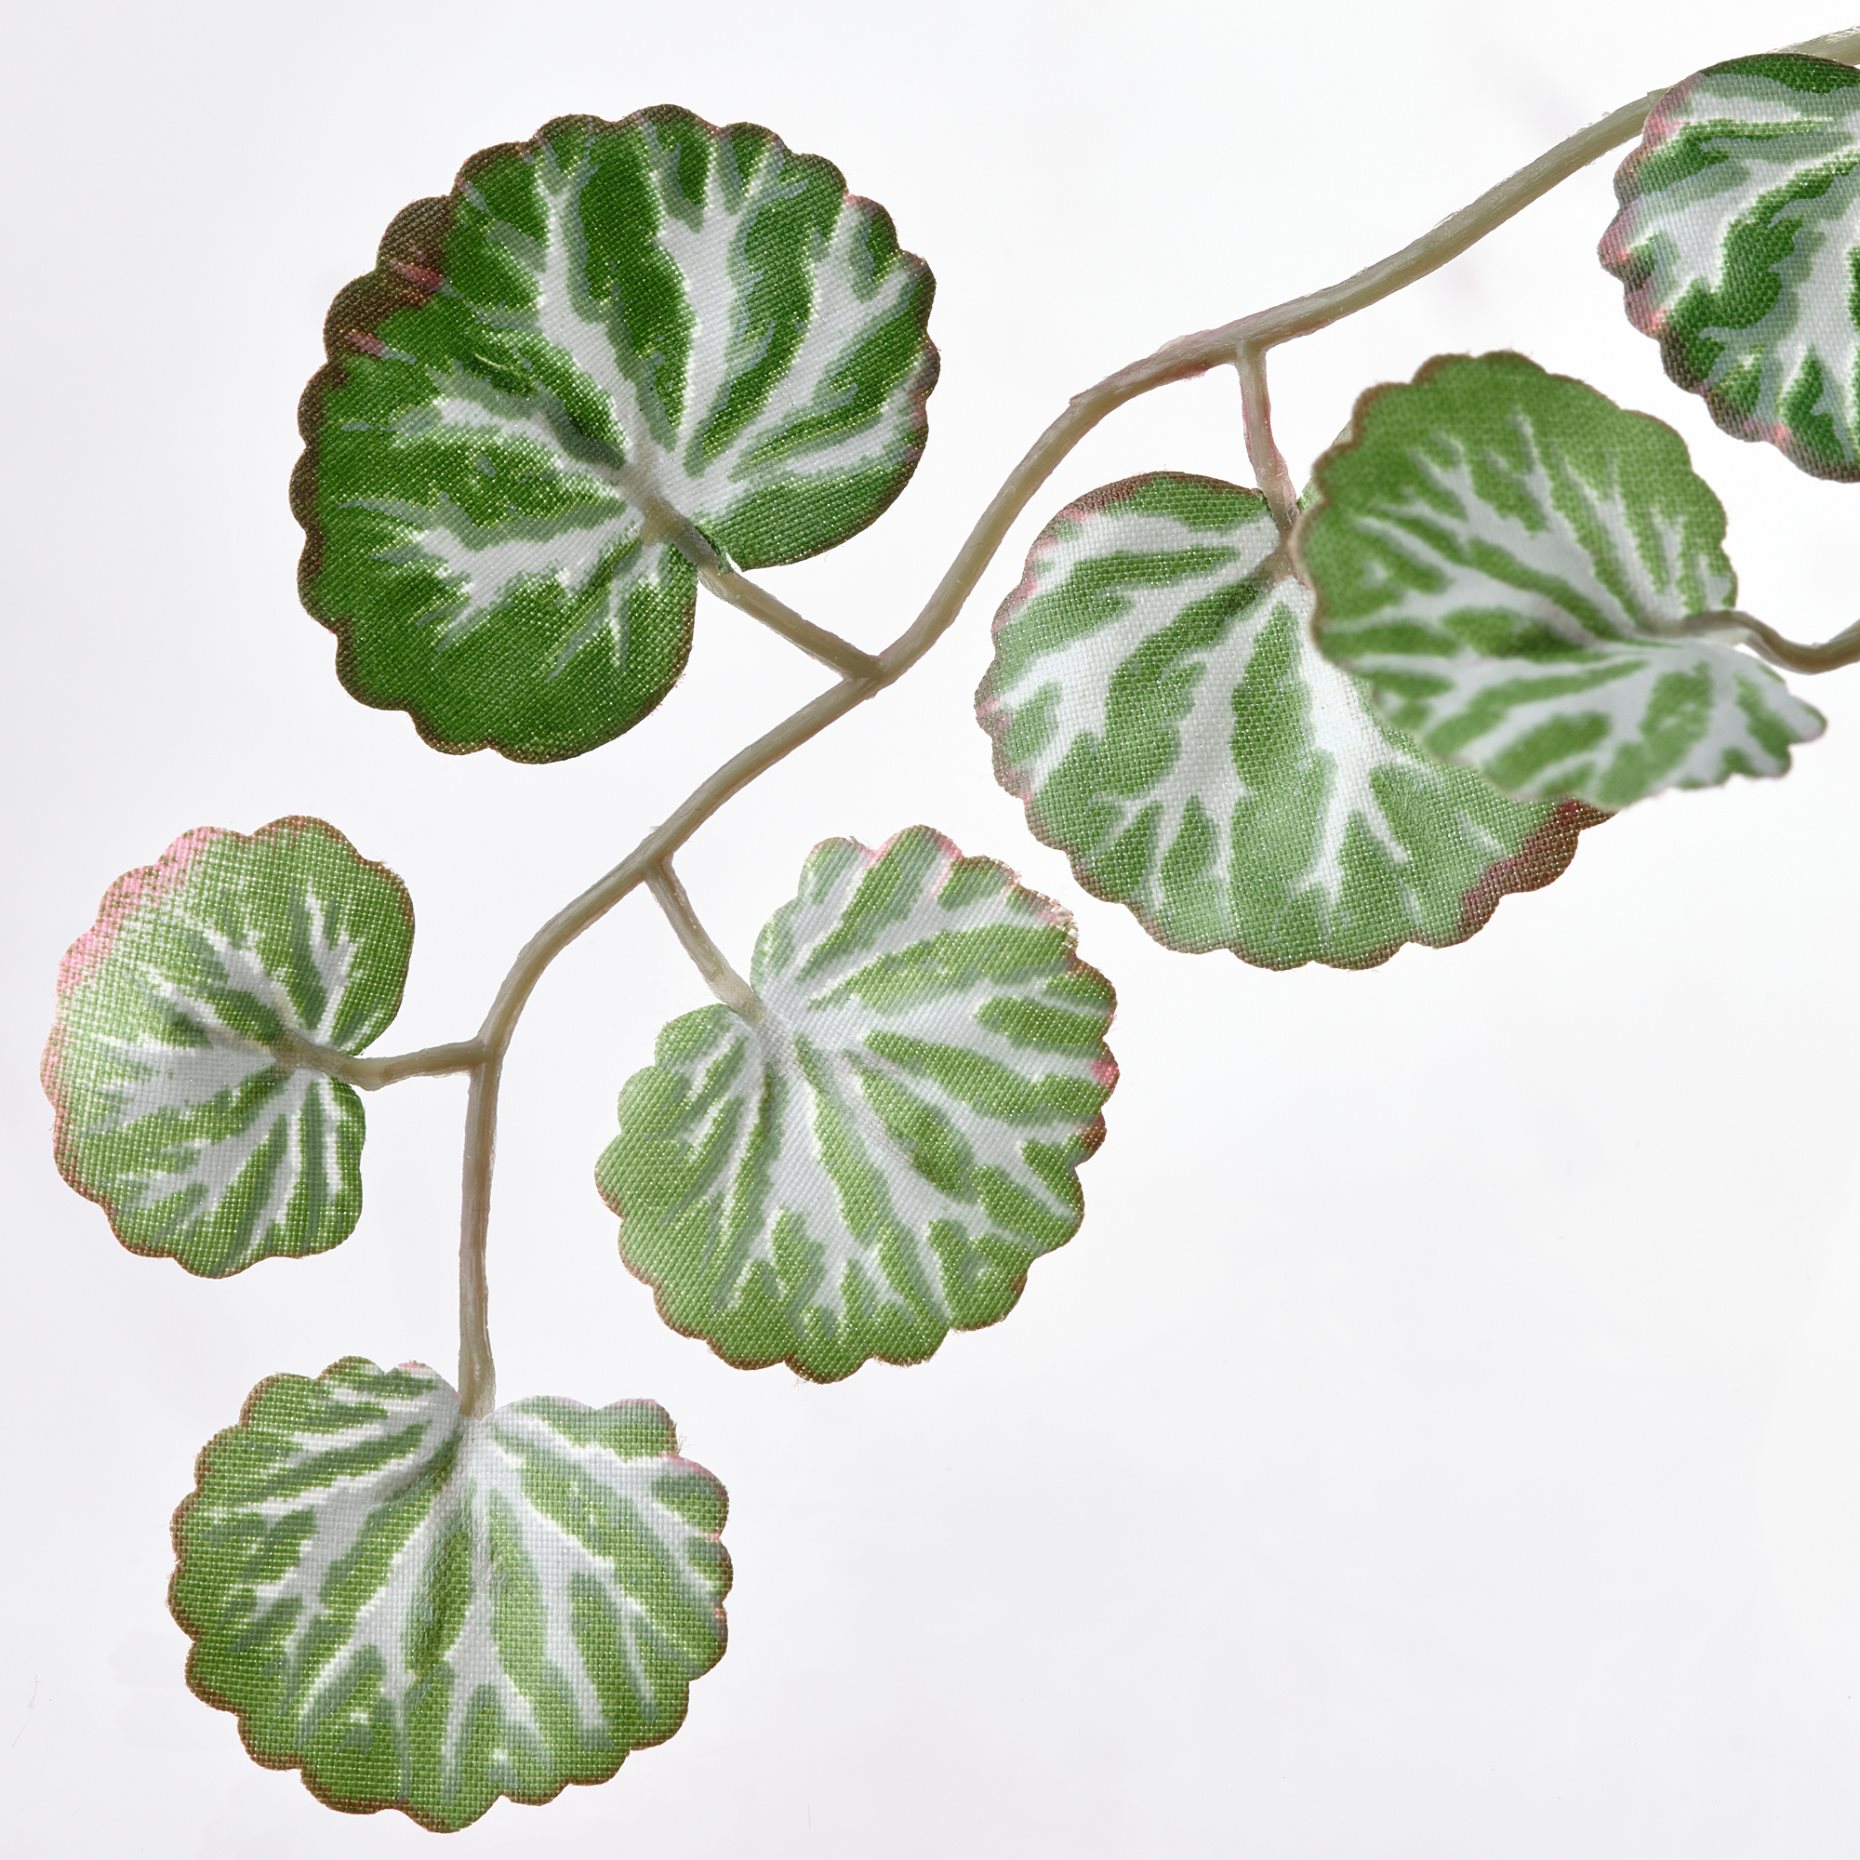 FEJKA, τεχνητό φυτό σε γλάστρα/εσωτερικού/εξωτερικού χώρου, 6 cm, 905.380.01